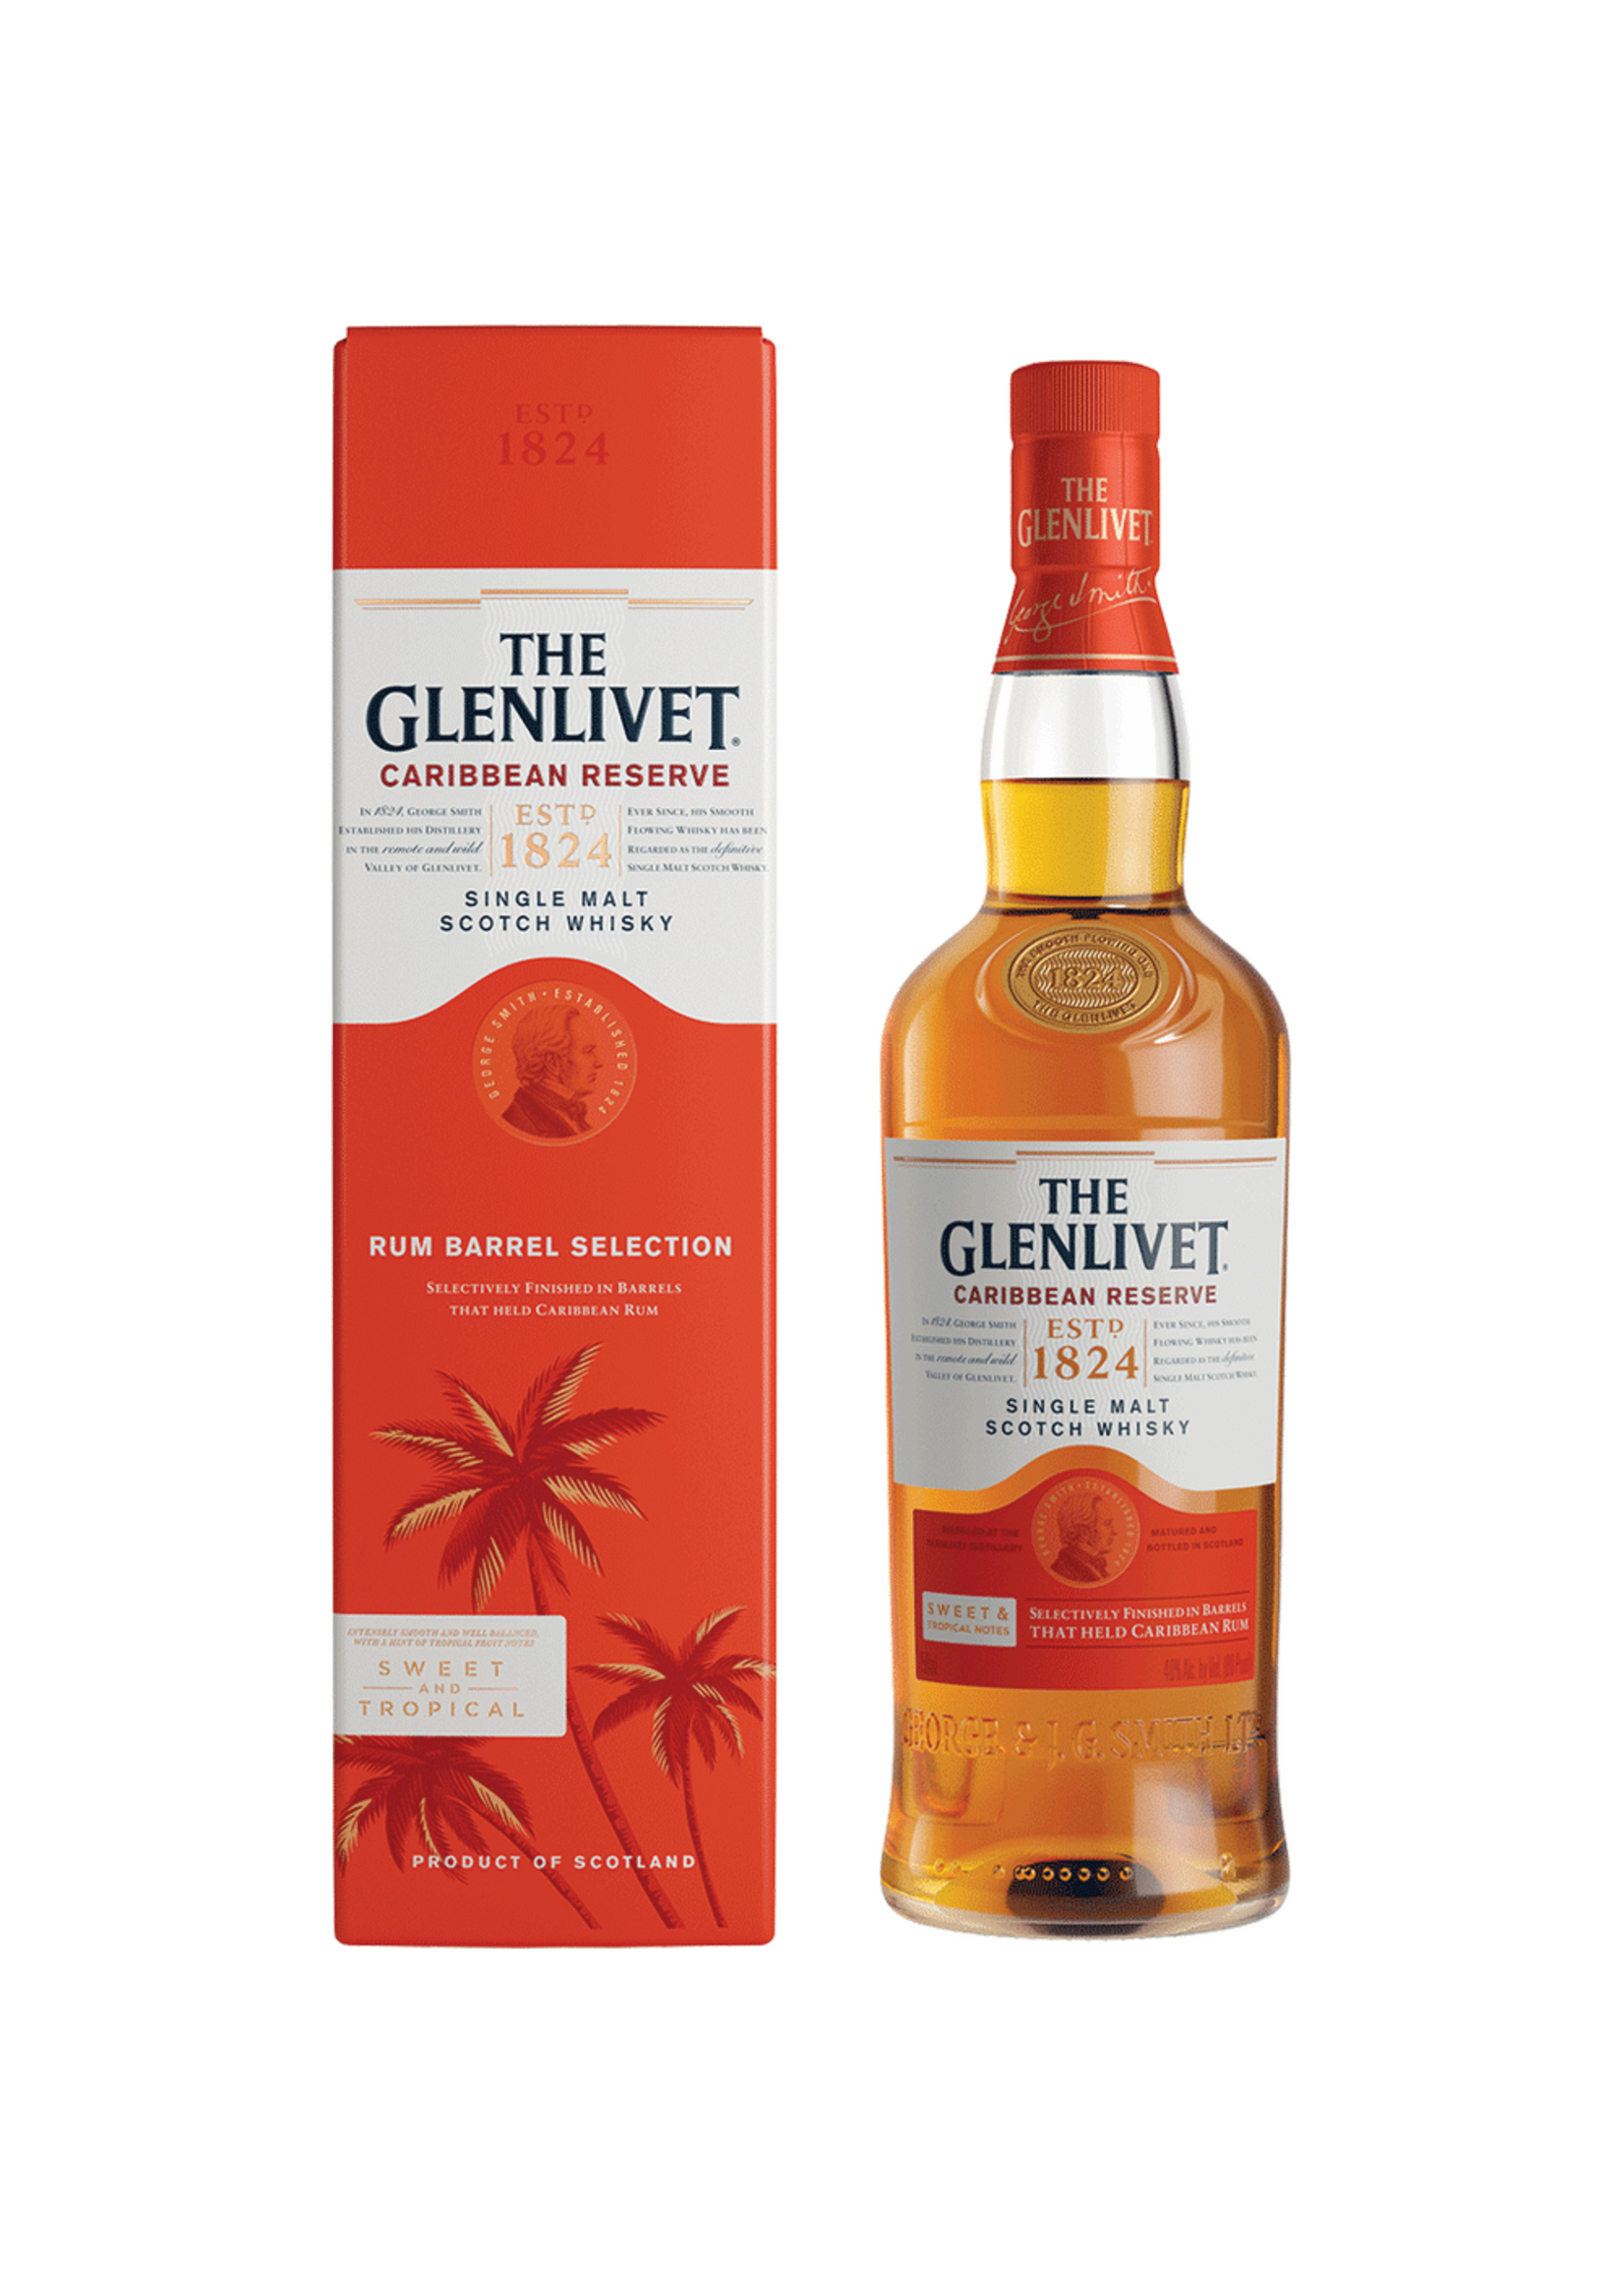 The Glenlivet The Glenlivet Rum Barrel Selection 80Proof 750ml